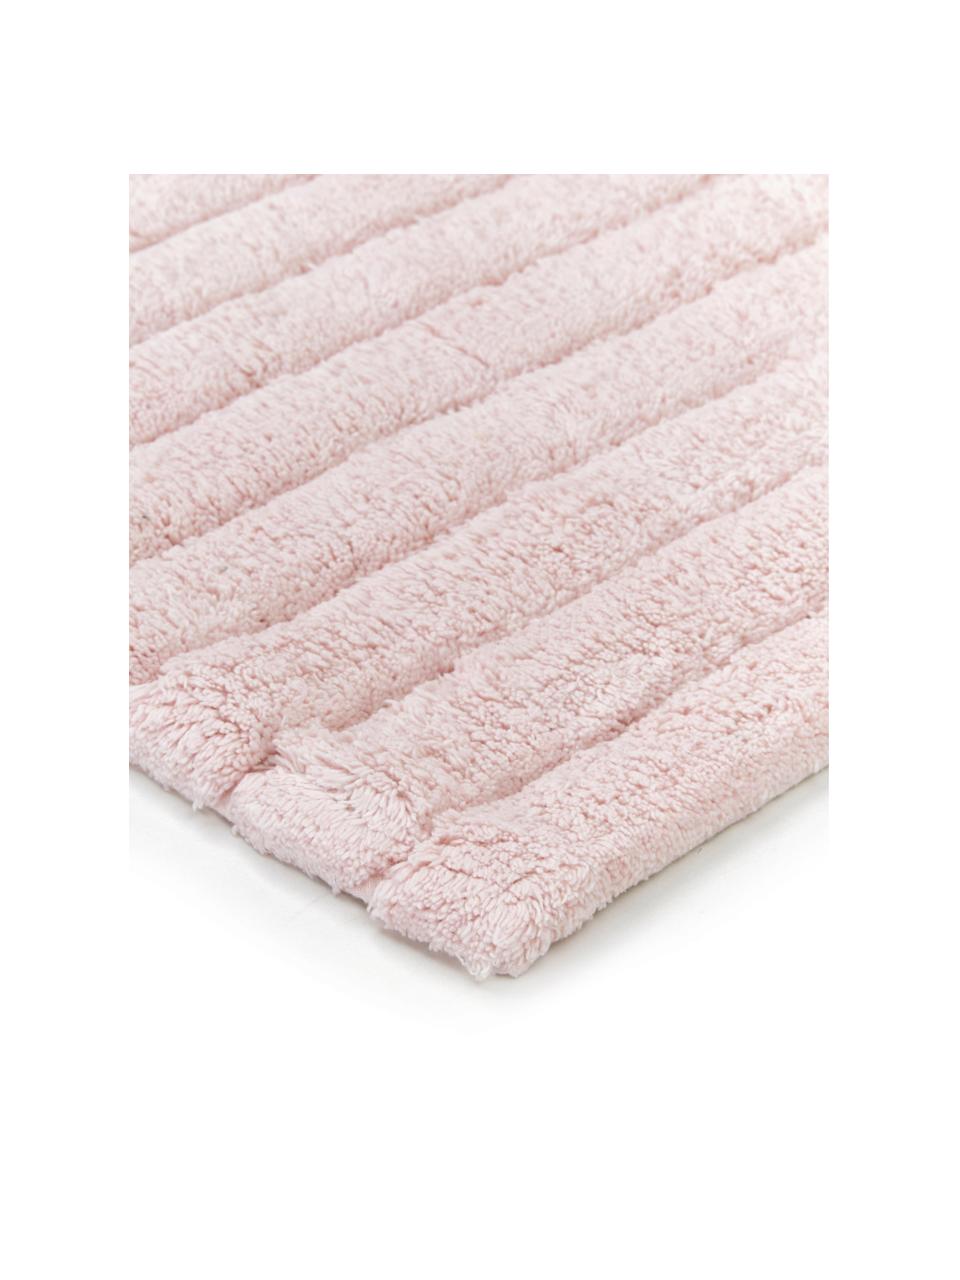 Alfombrilla de baño Board, 100% algodón
Gramaje superior, 1900 g/m², Rosa, An 60 x L 90 cm